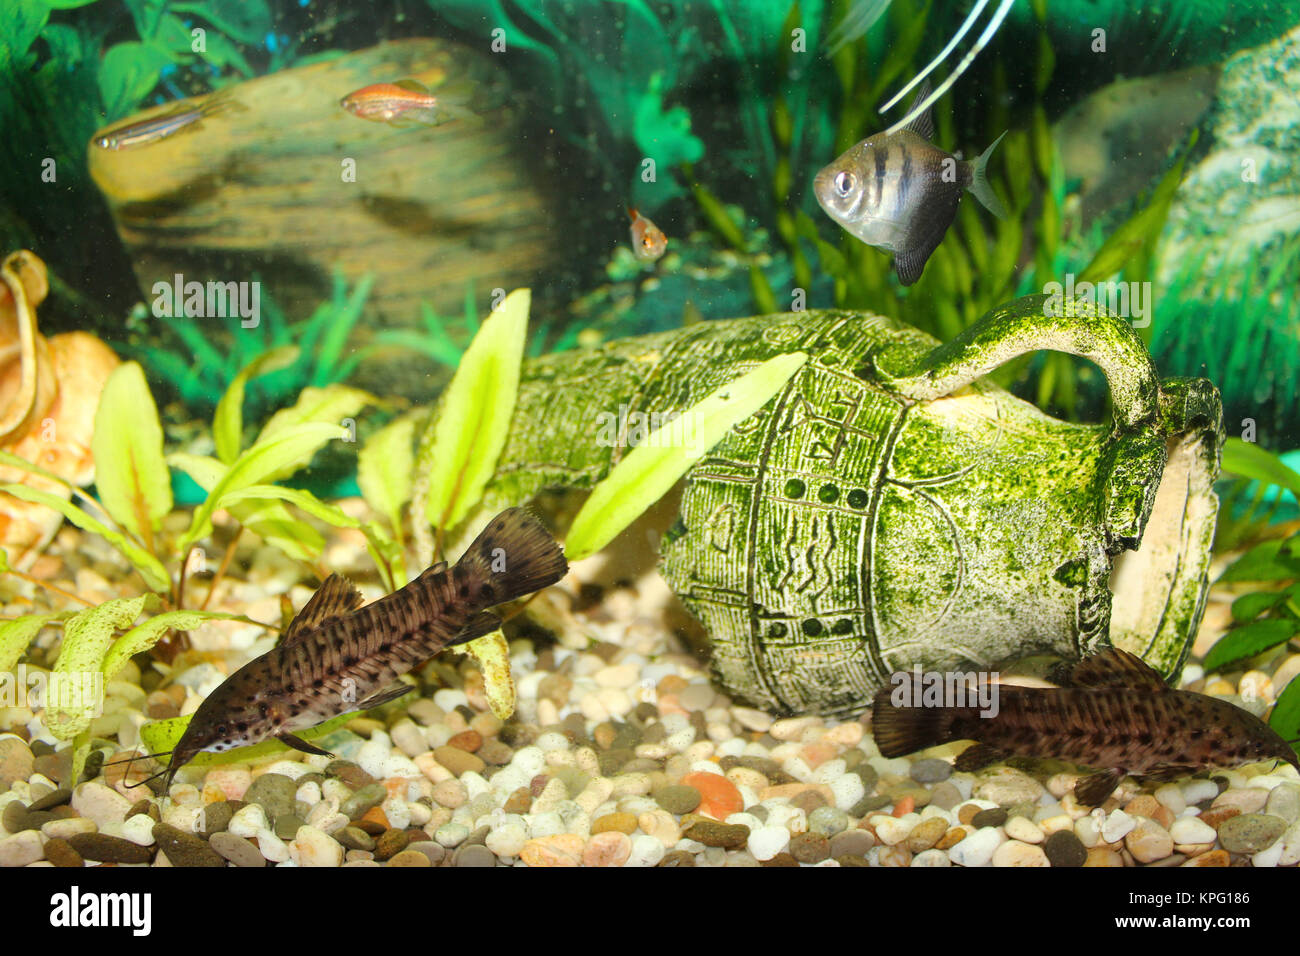 Hoplosternum thoracatum in aquarium Stock Photo